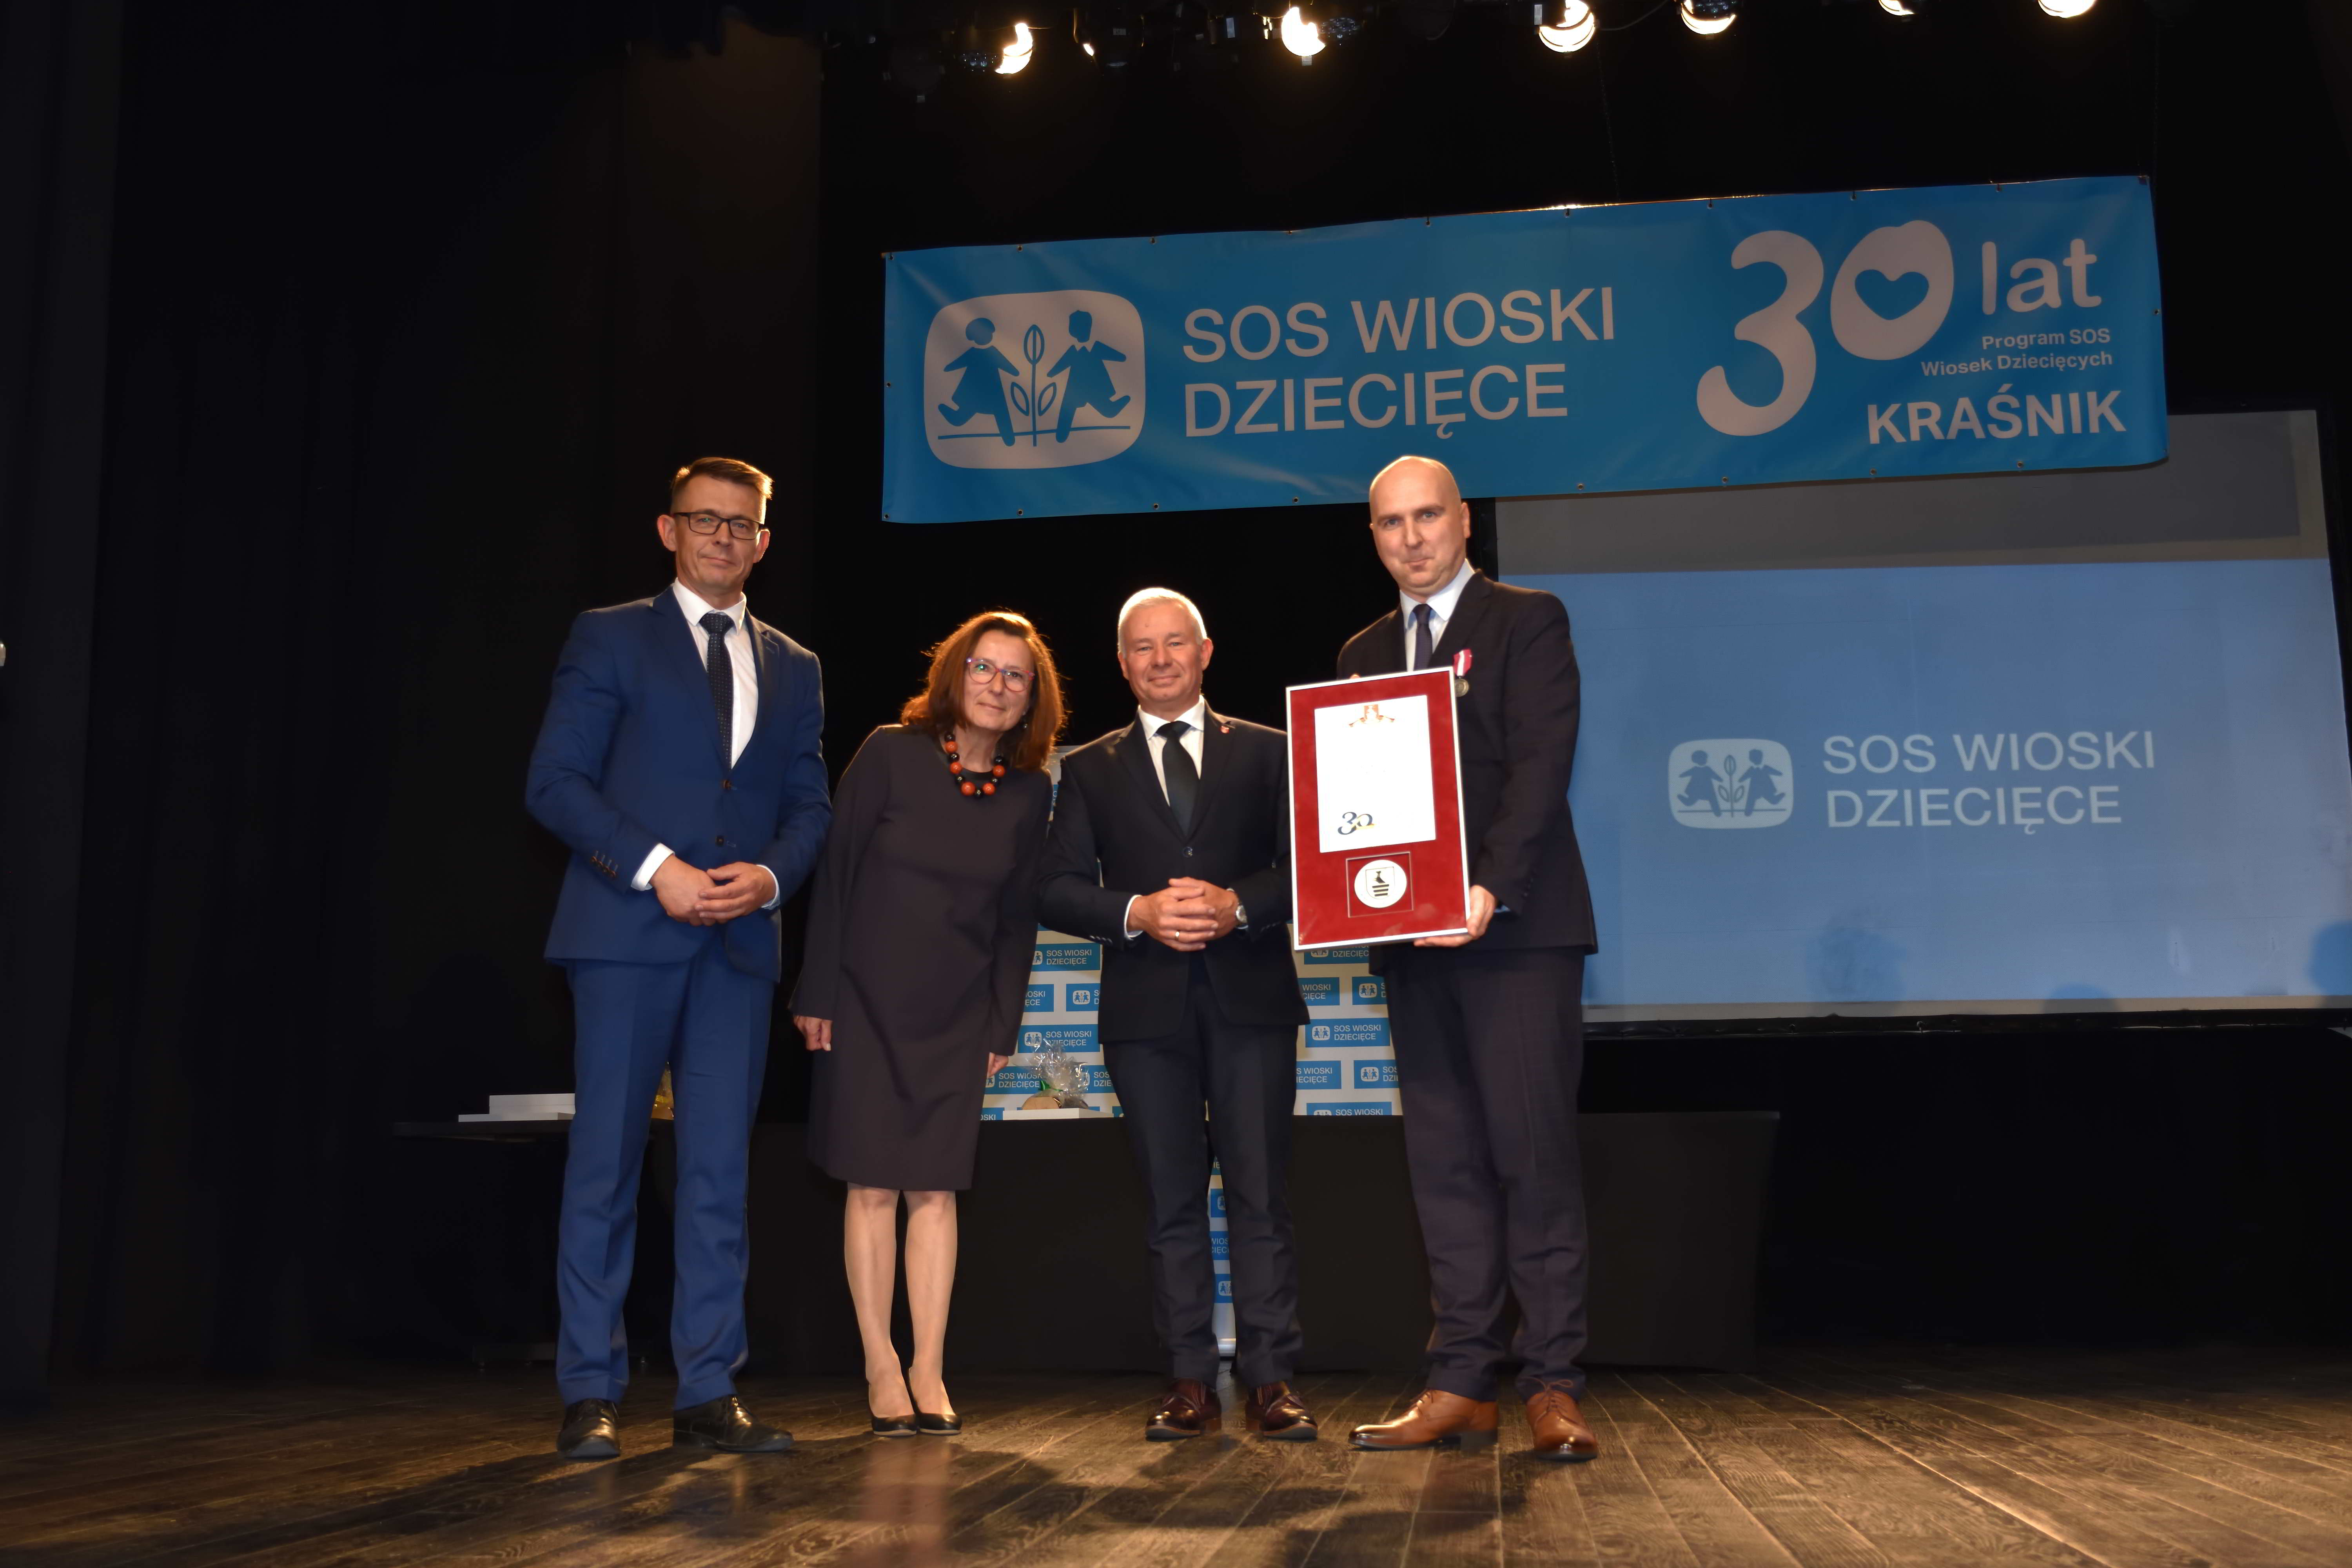 Jubileusz 30-lecia SOS Wioski Dziecięcej w Kraśniku